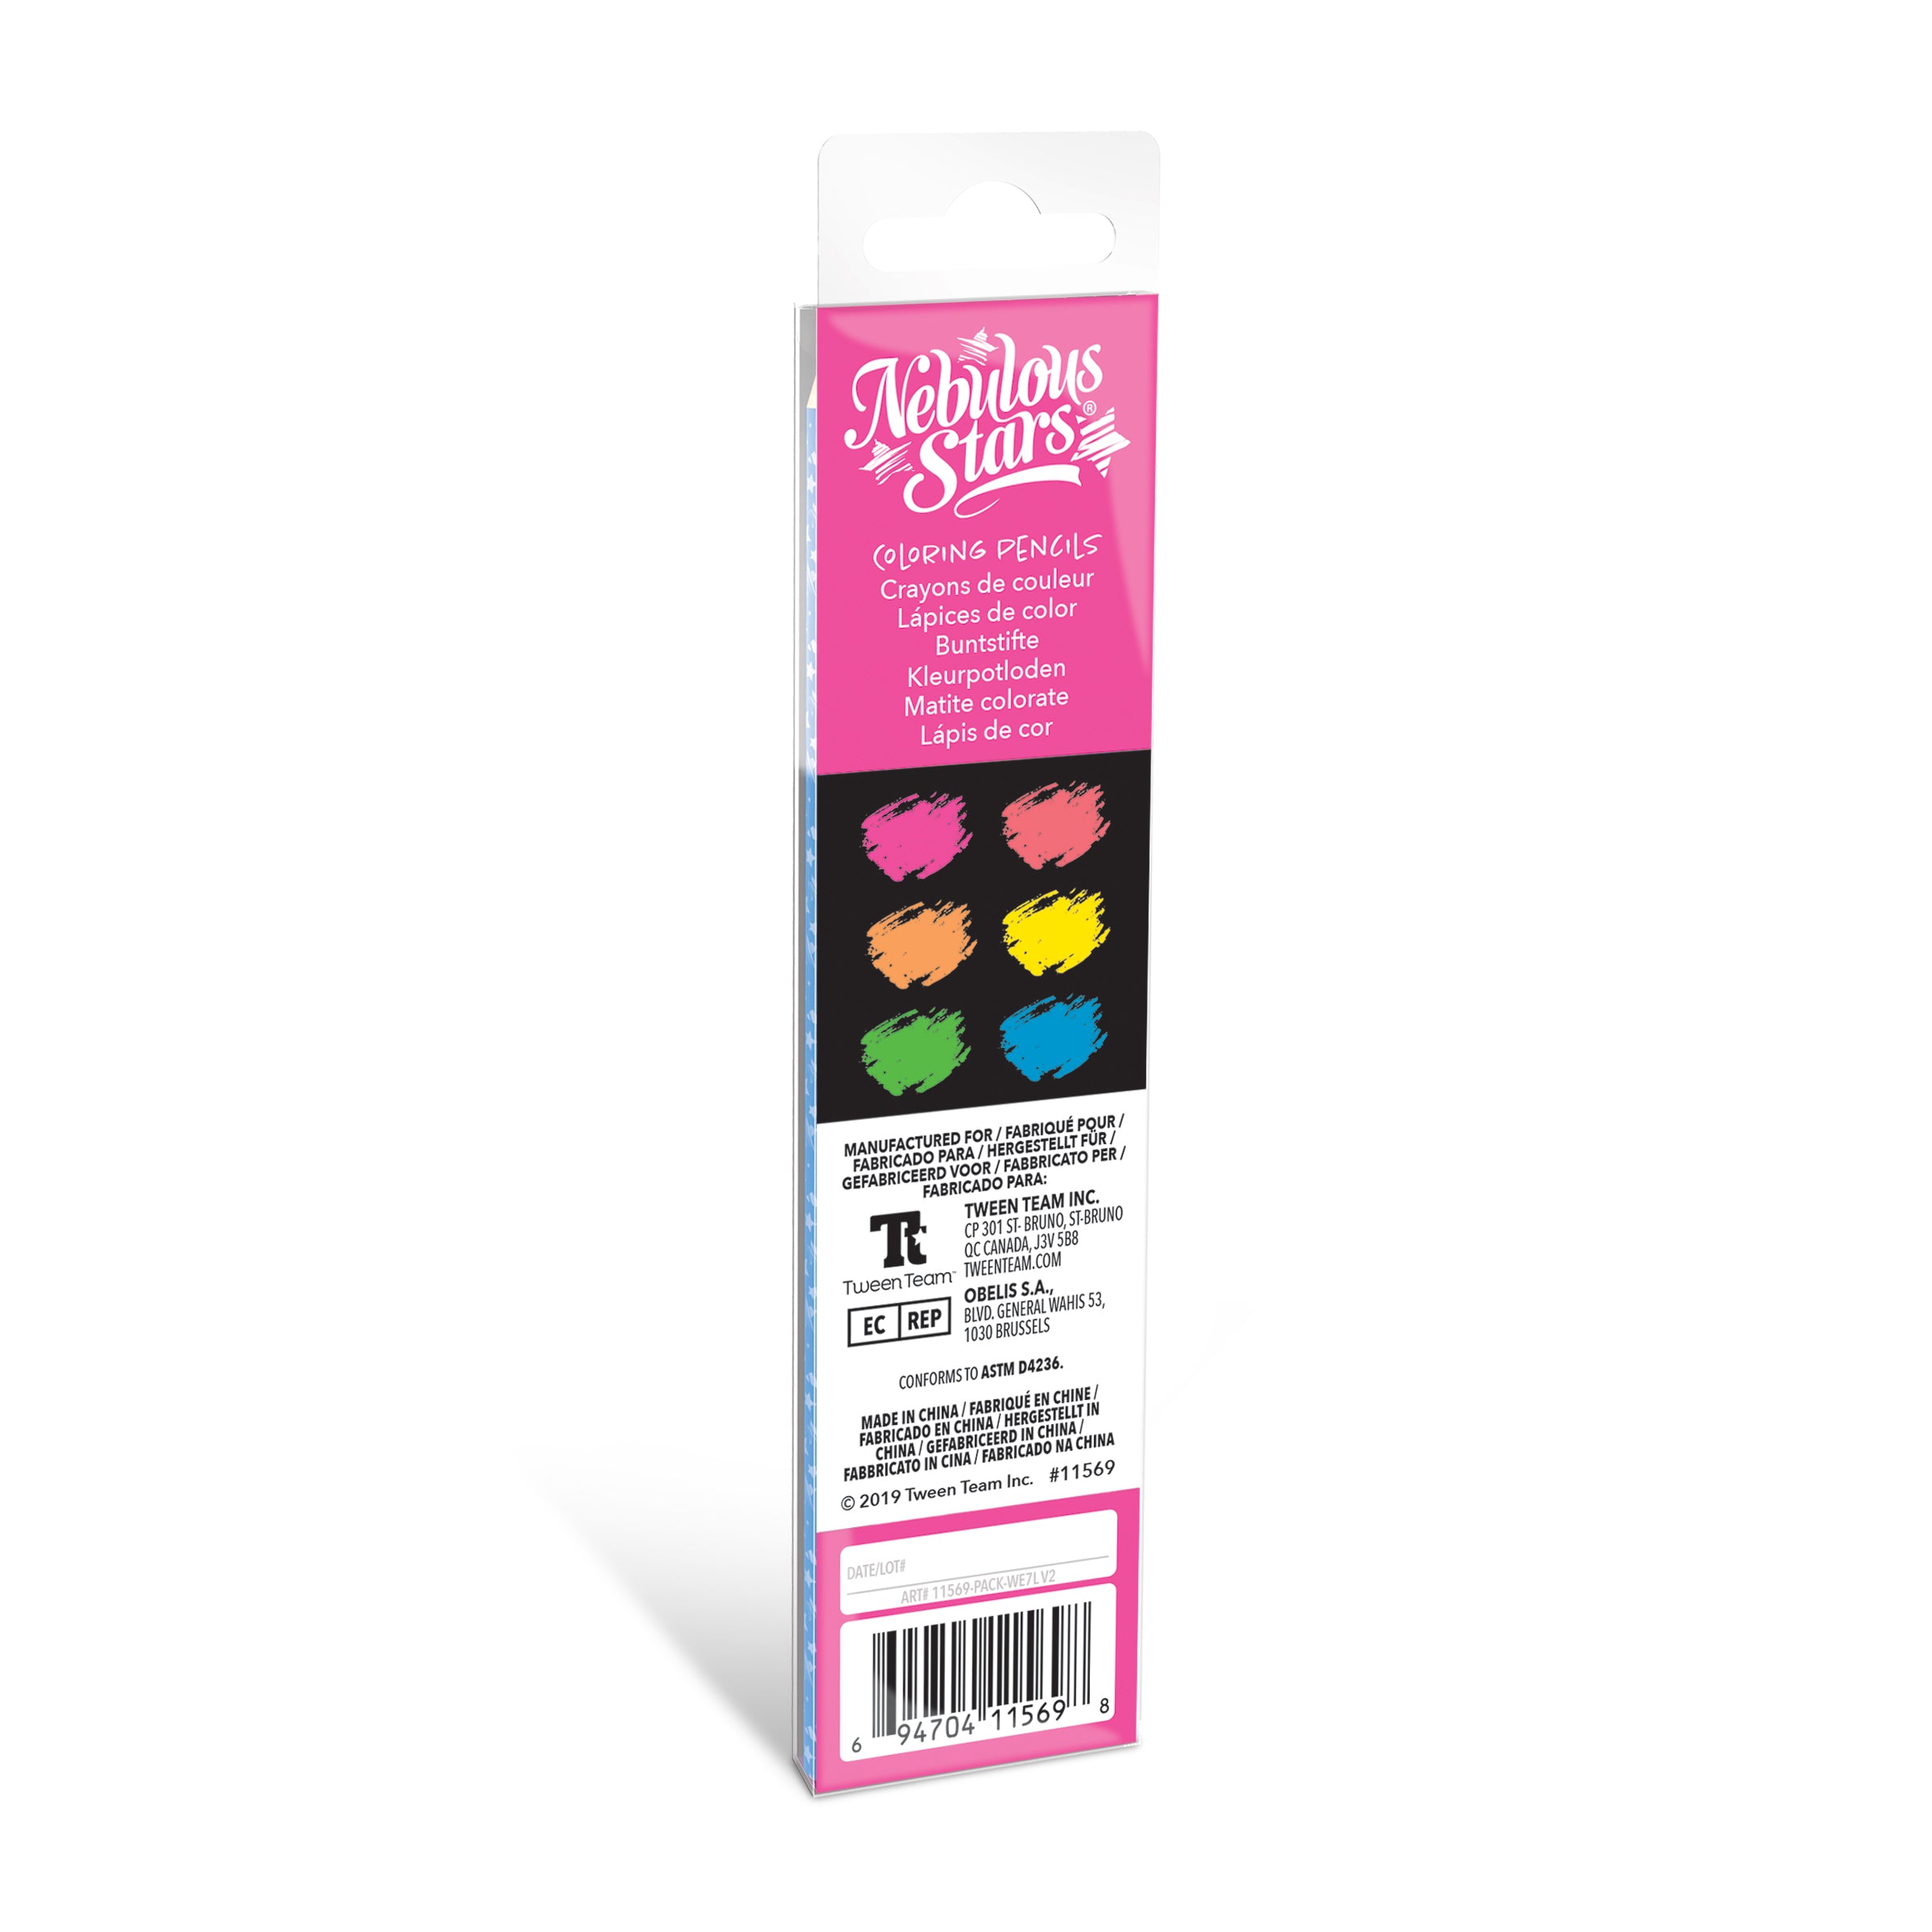 Nebulous Stars - Wooden Color Pencils (6 Pack) - Neon Colors